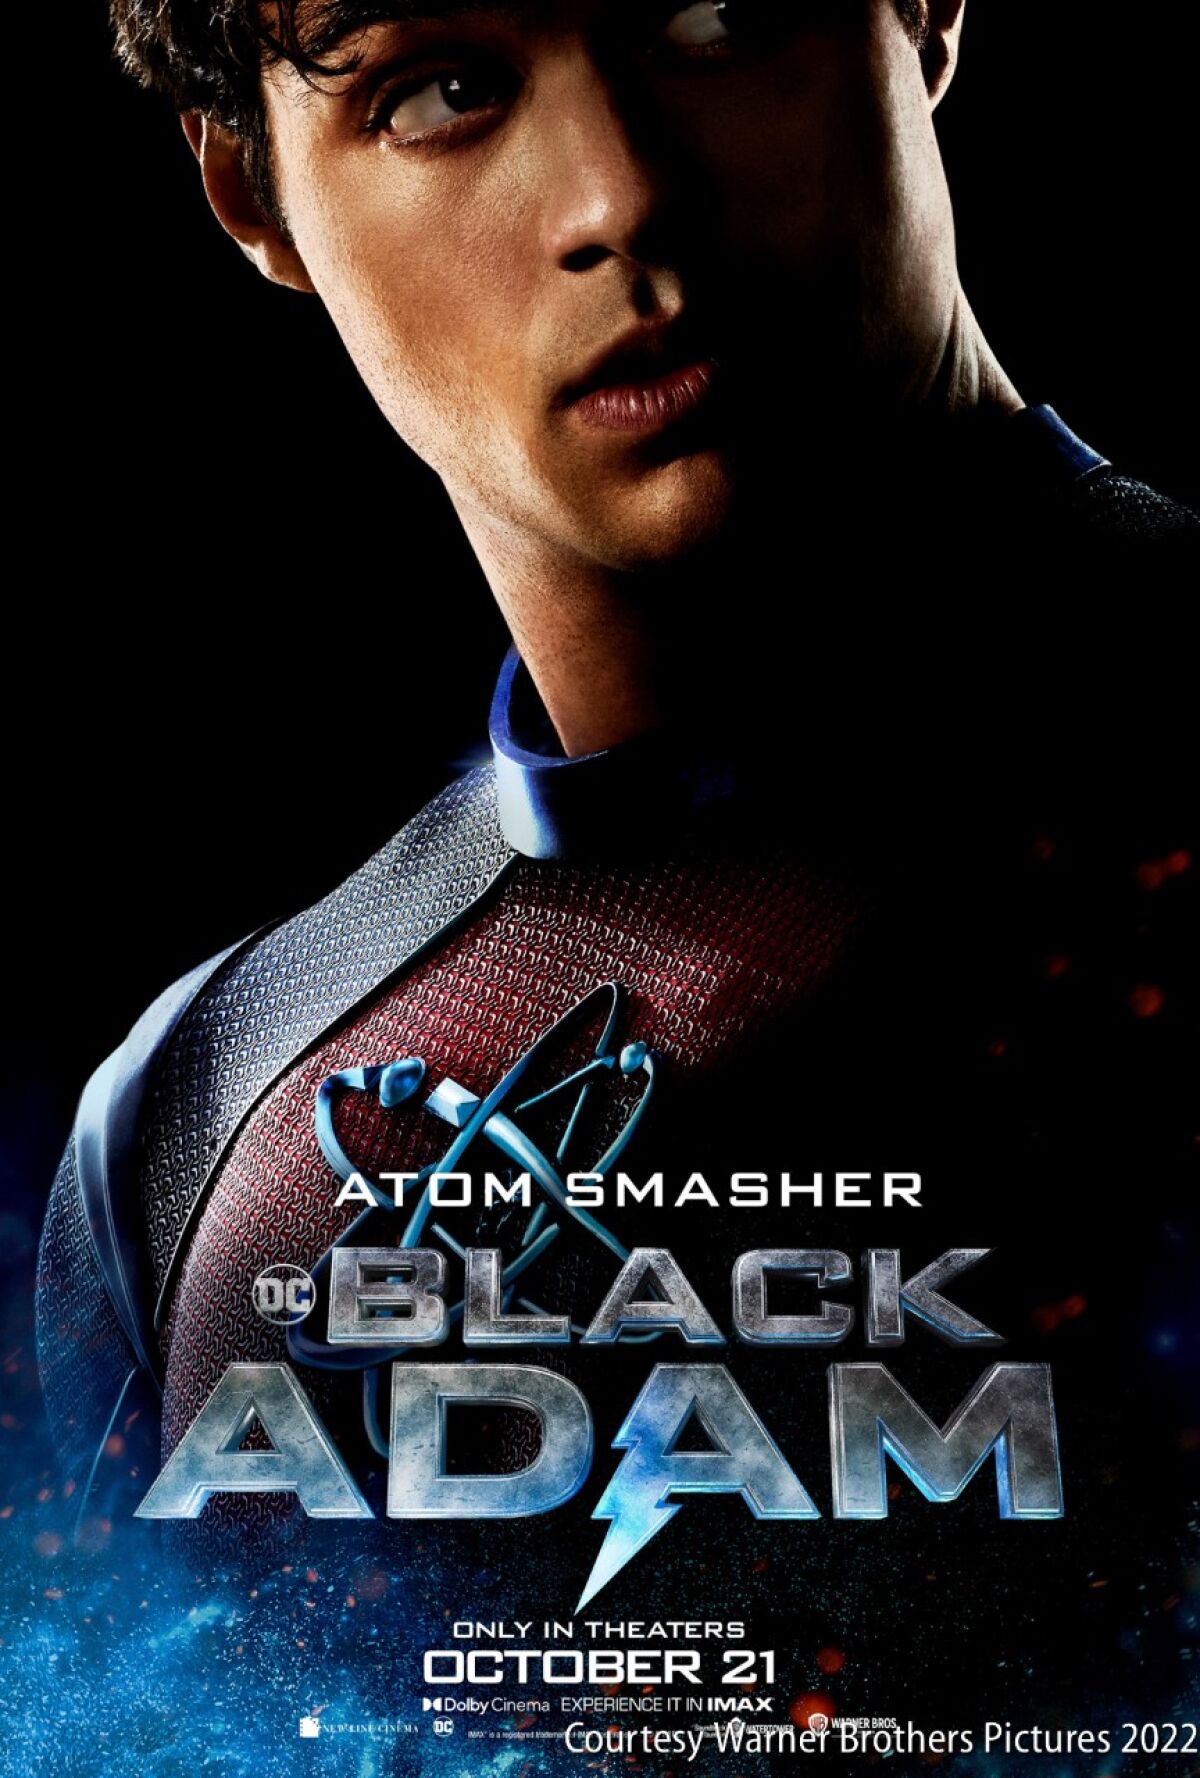 Movie character Atom Smasher